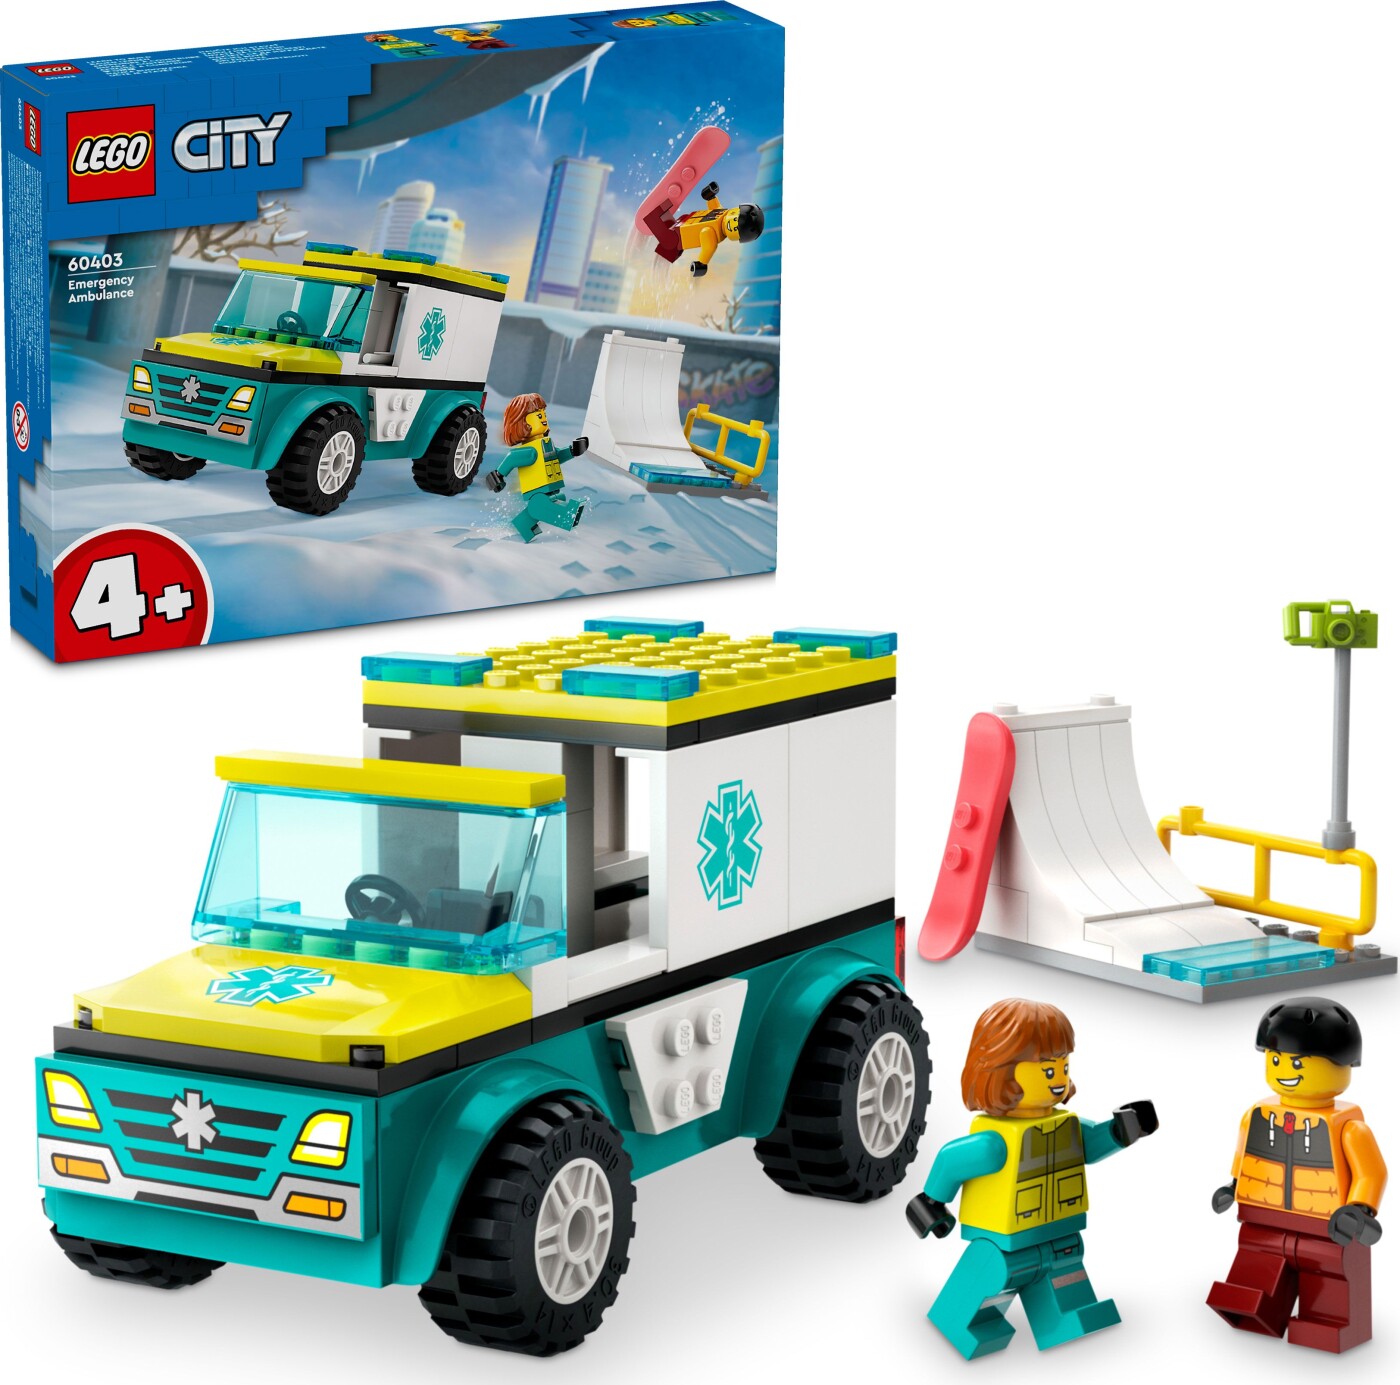 Billede af Lego City - Ambulance Og Snowboarder - 60403